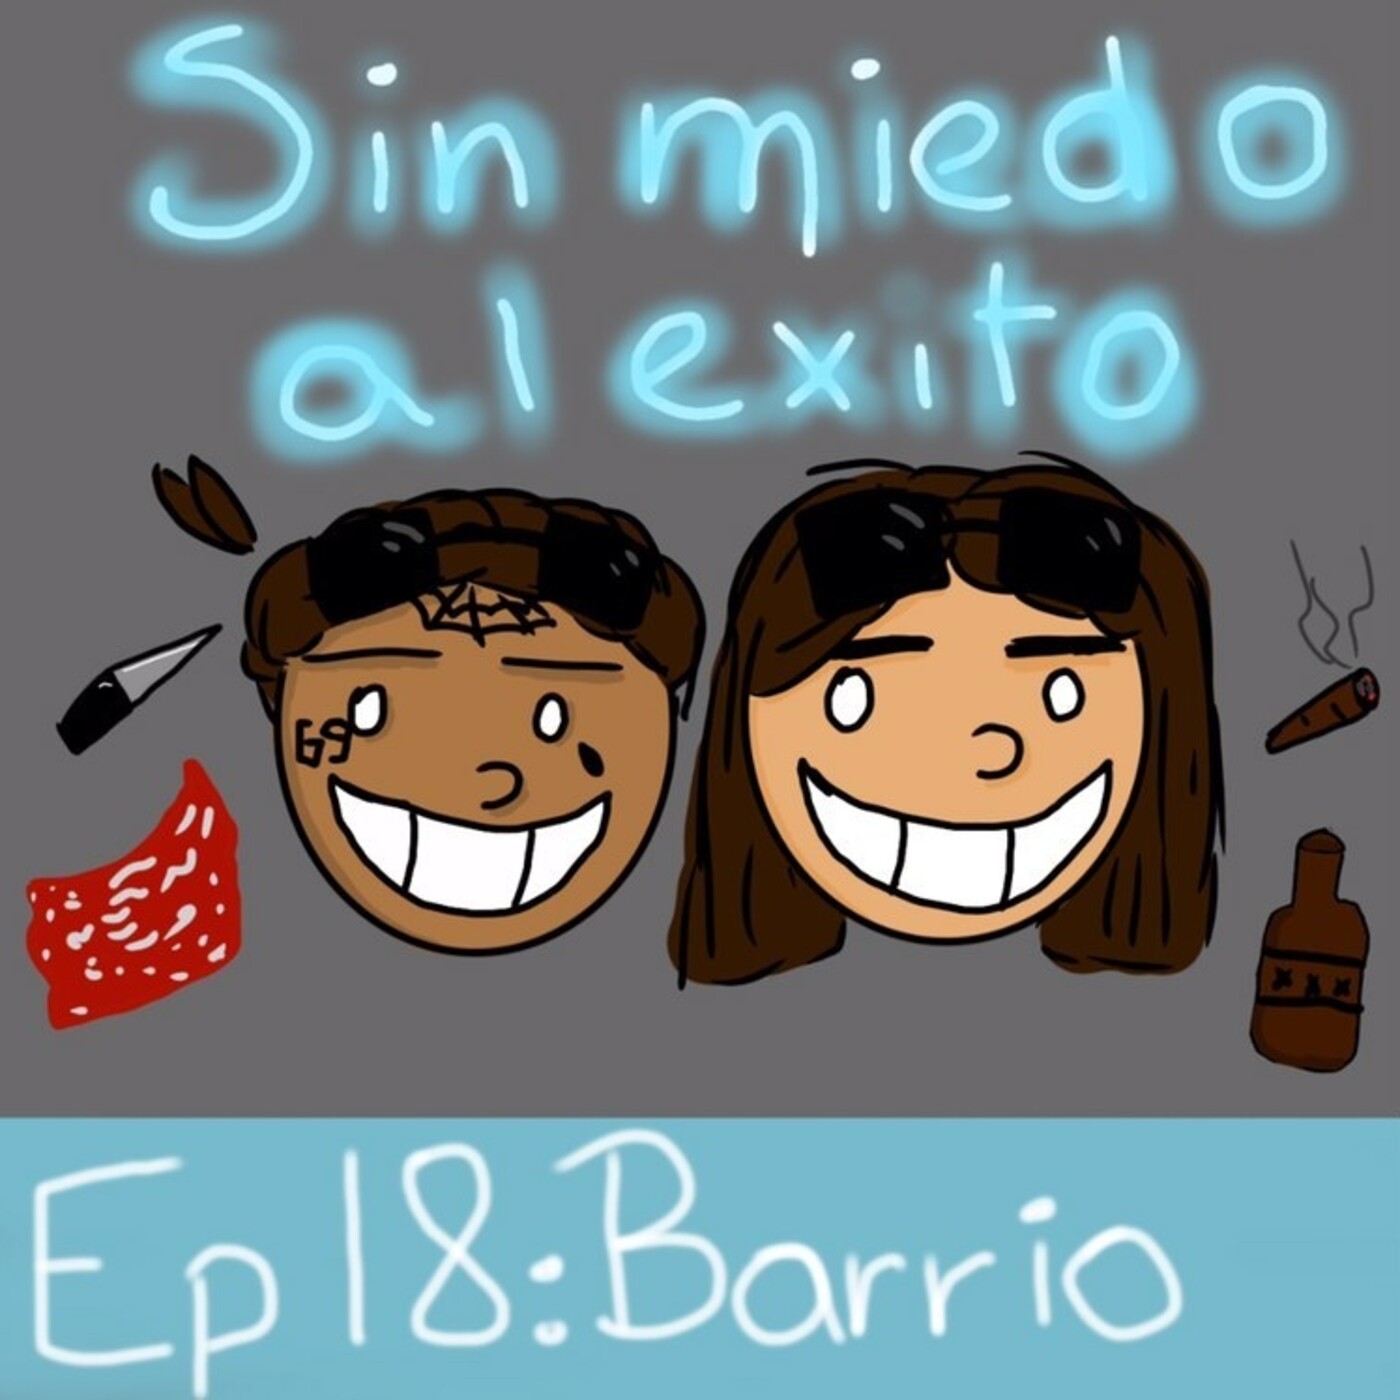 Ep 18: Barrio